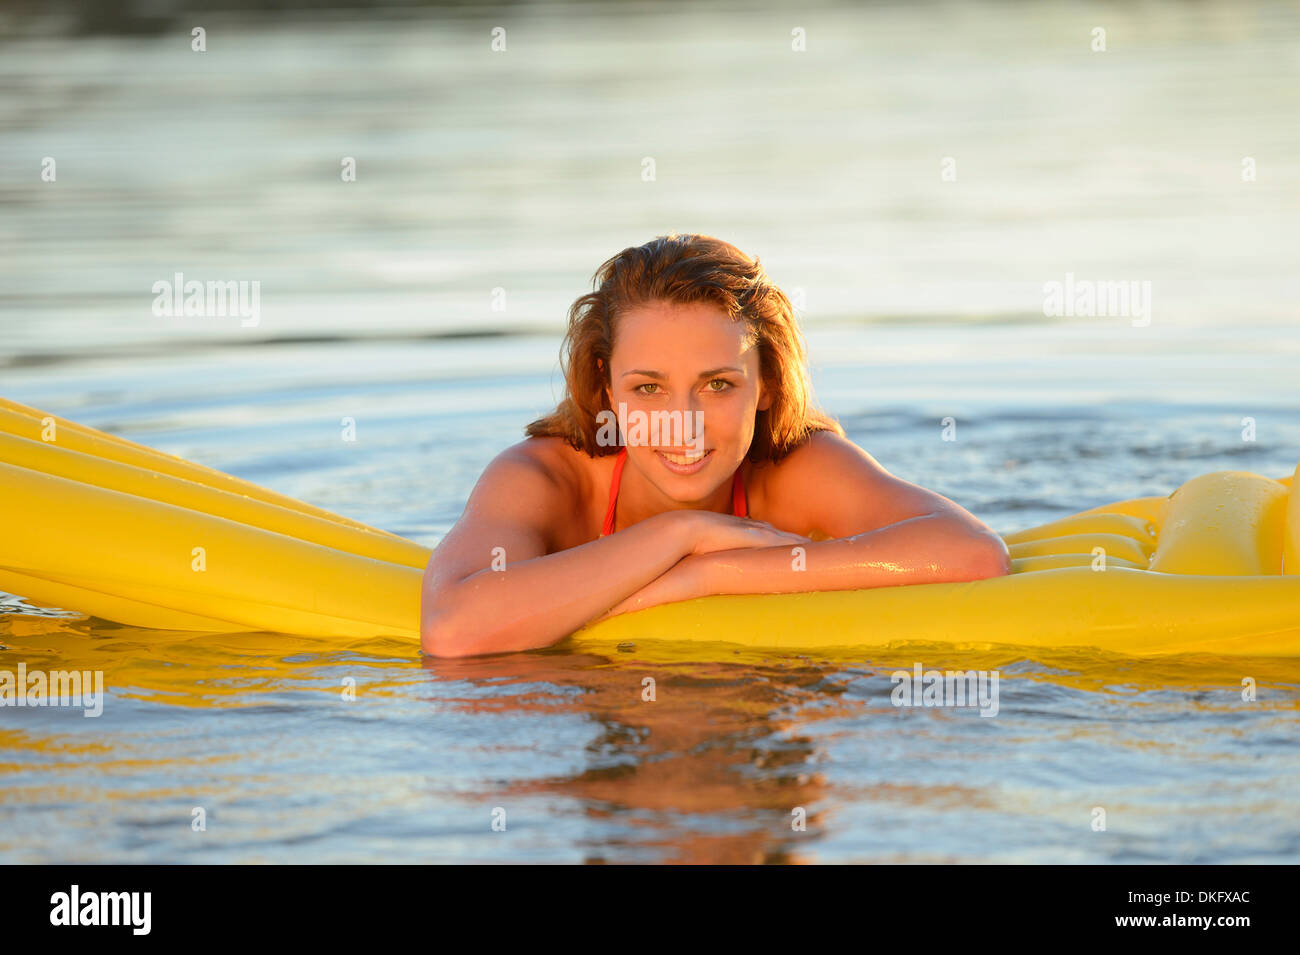 Jeune femme avec des matelas dans un lac Banque D'Images